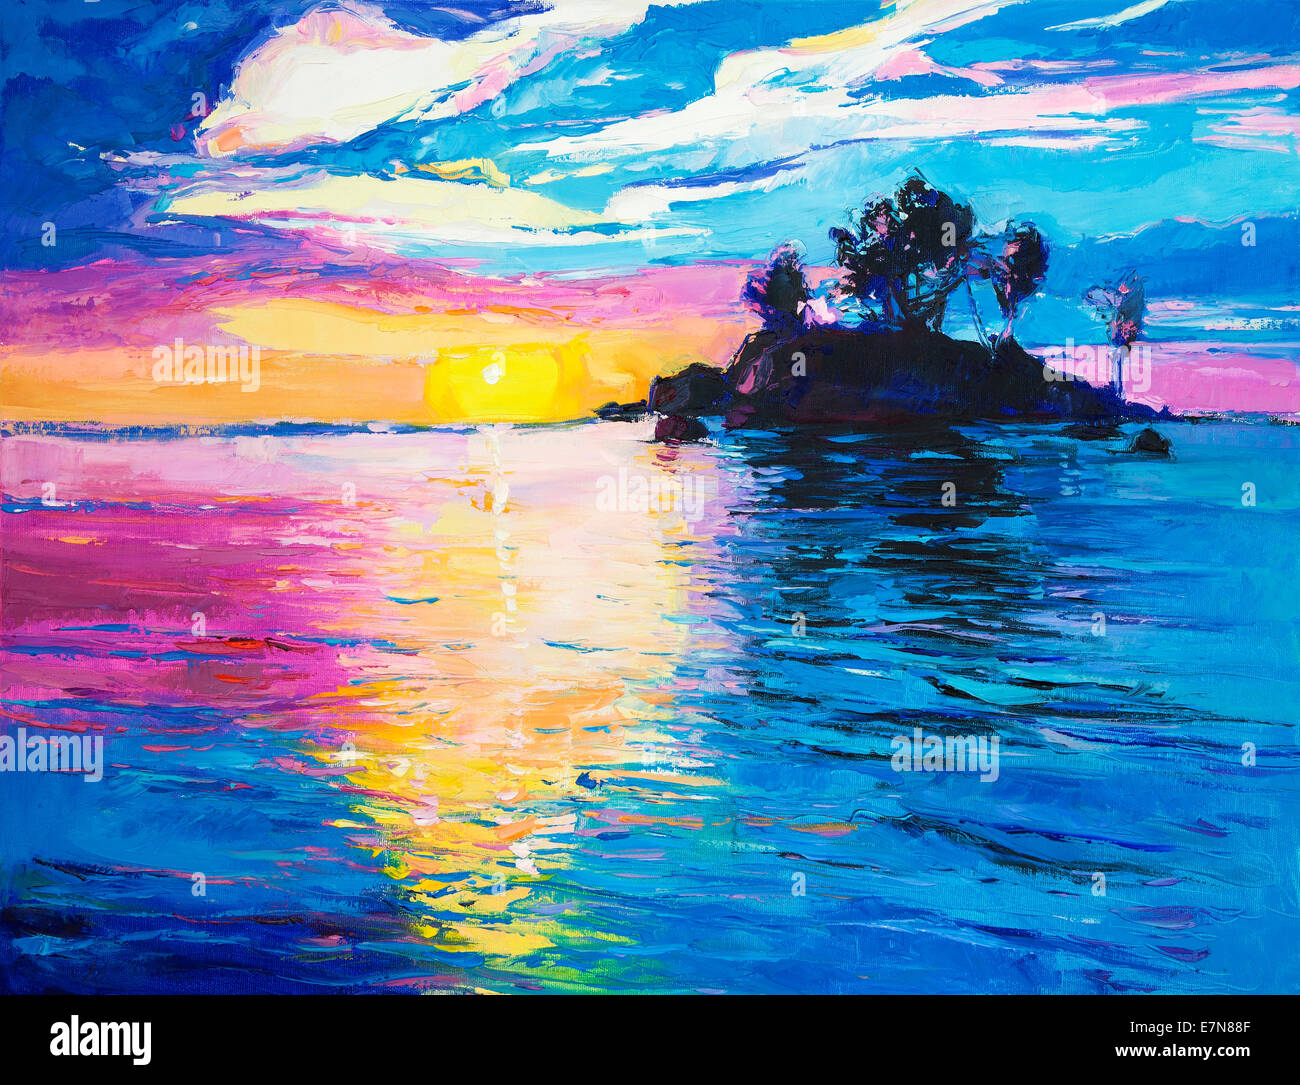 Pintura al óleo original de la solitaria isla y mar de canvas.rico colorido atardecer sobre el océano.impresionismo moderno Foto de stock